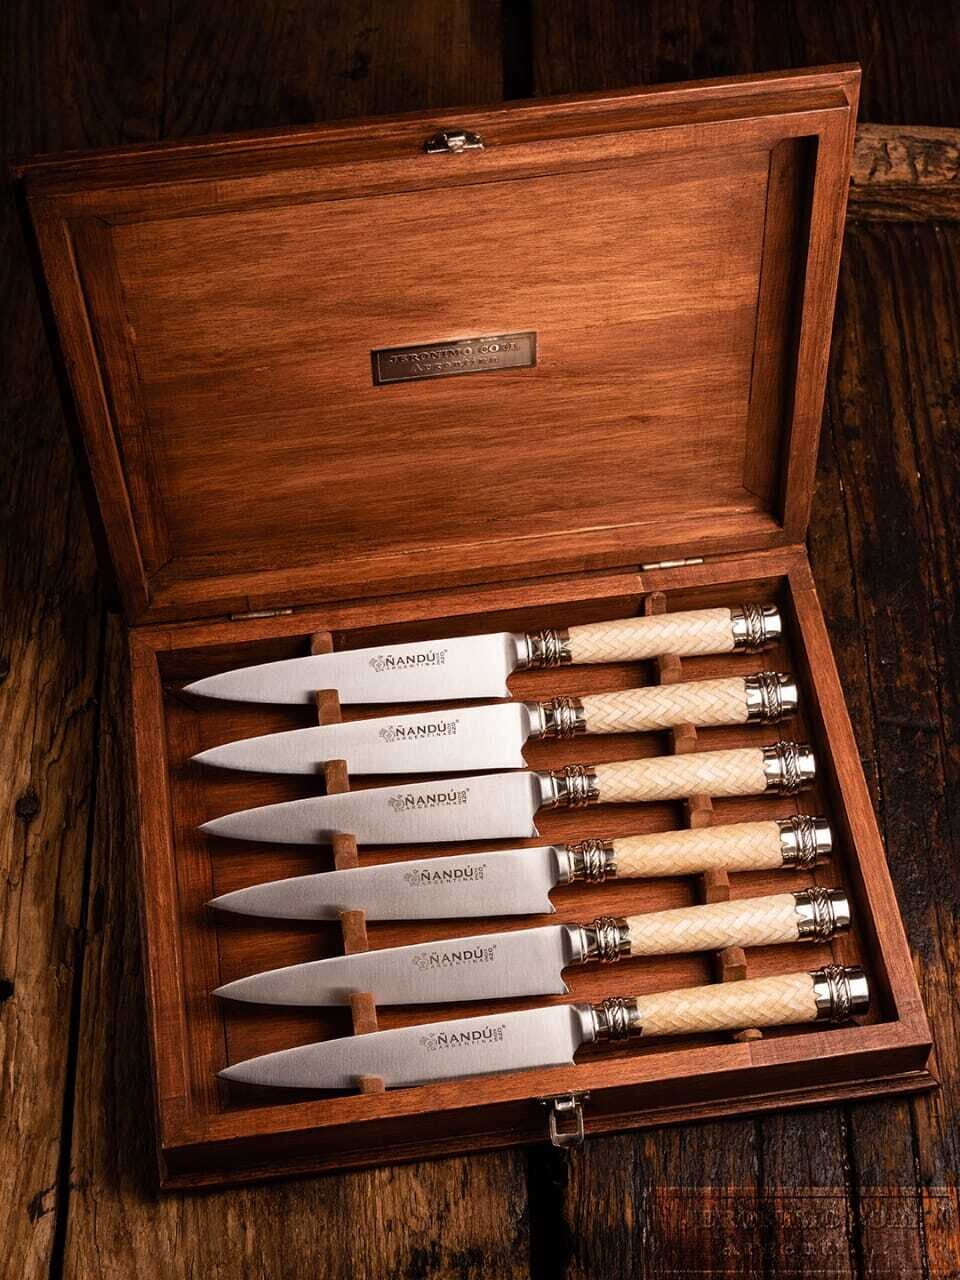 Rawhide Steak knife set with box